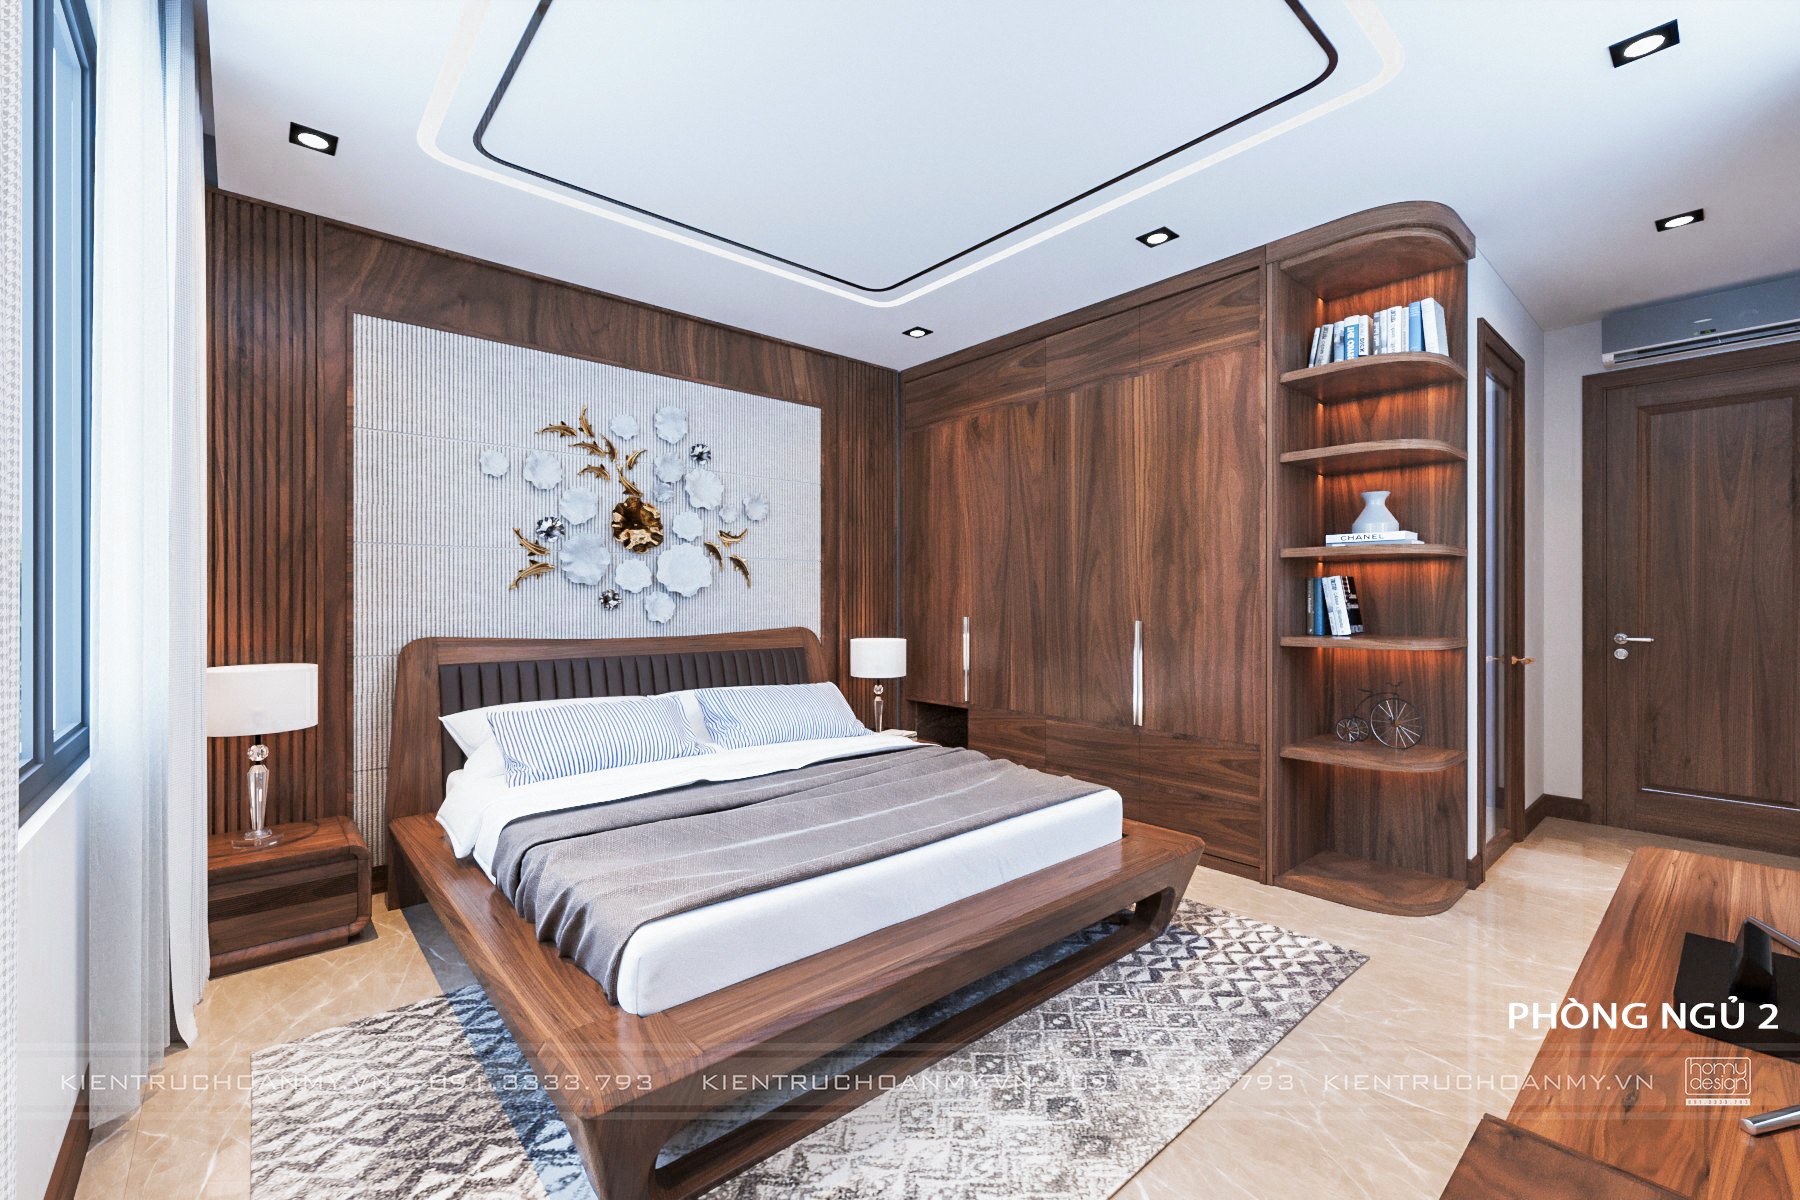 Giường, tủ được làm từ vật liệu gỗ óc chó cao cấp